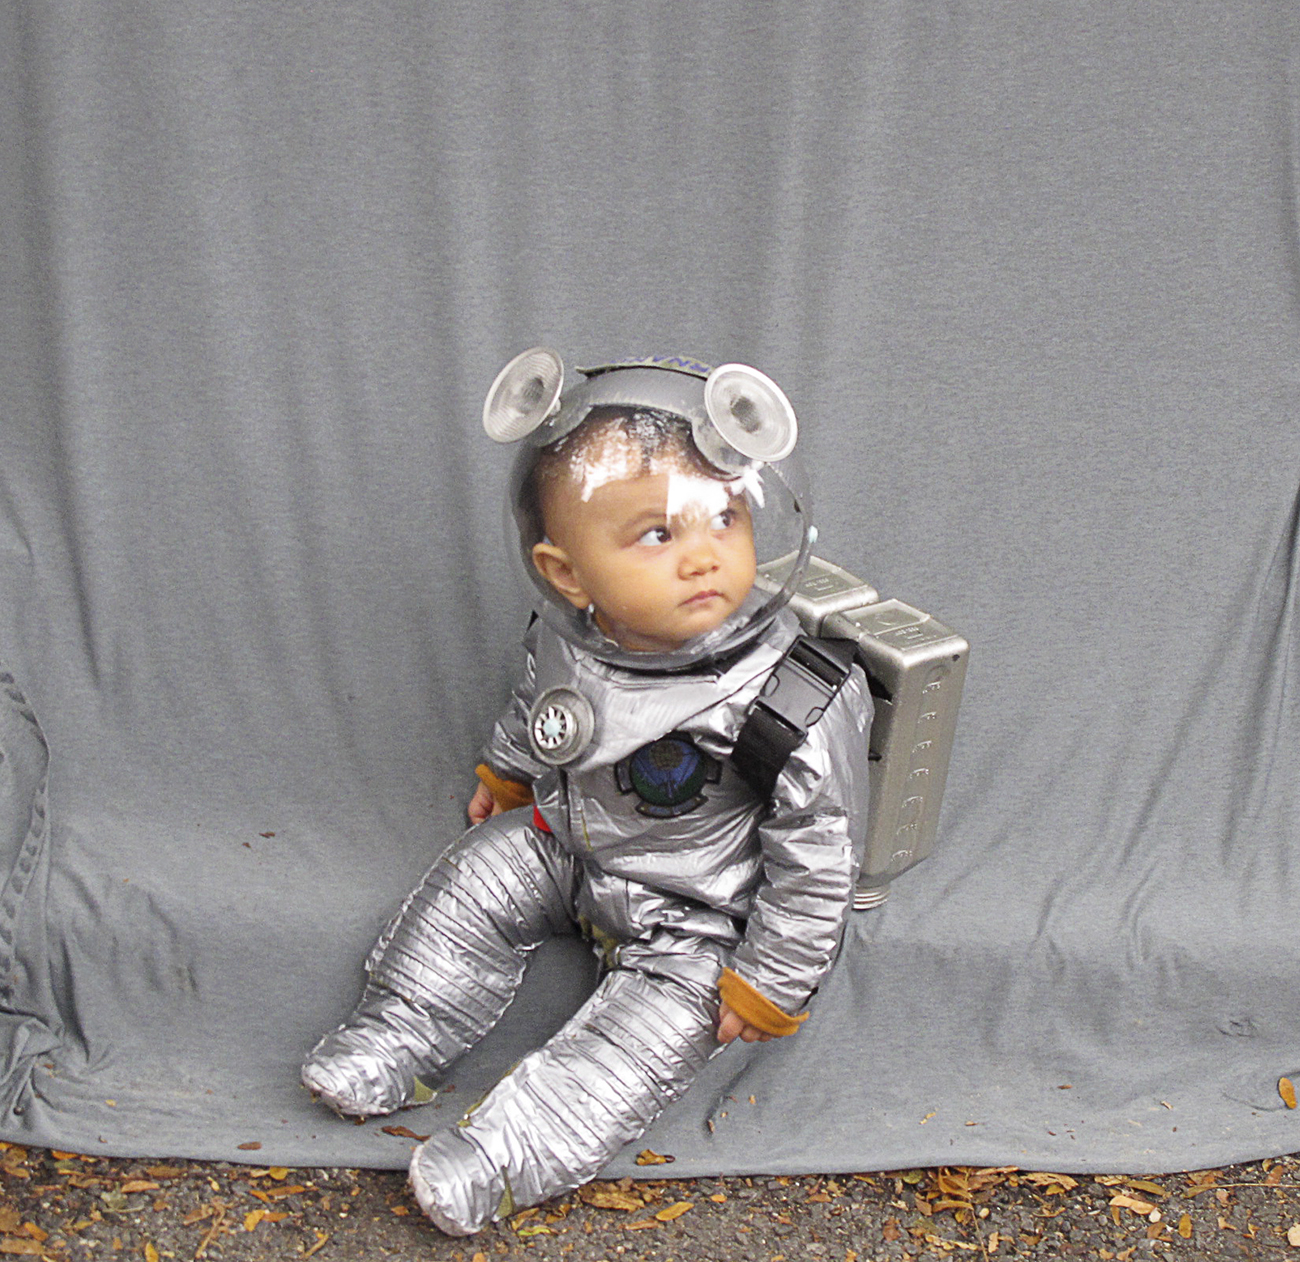 Костюм на день космонавтики для мальчика